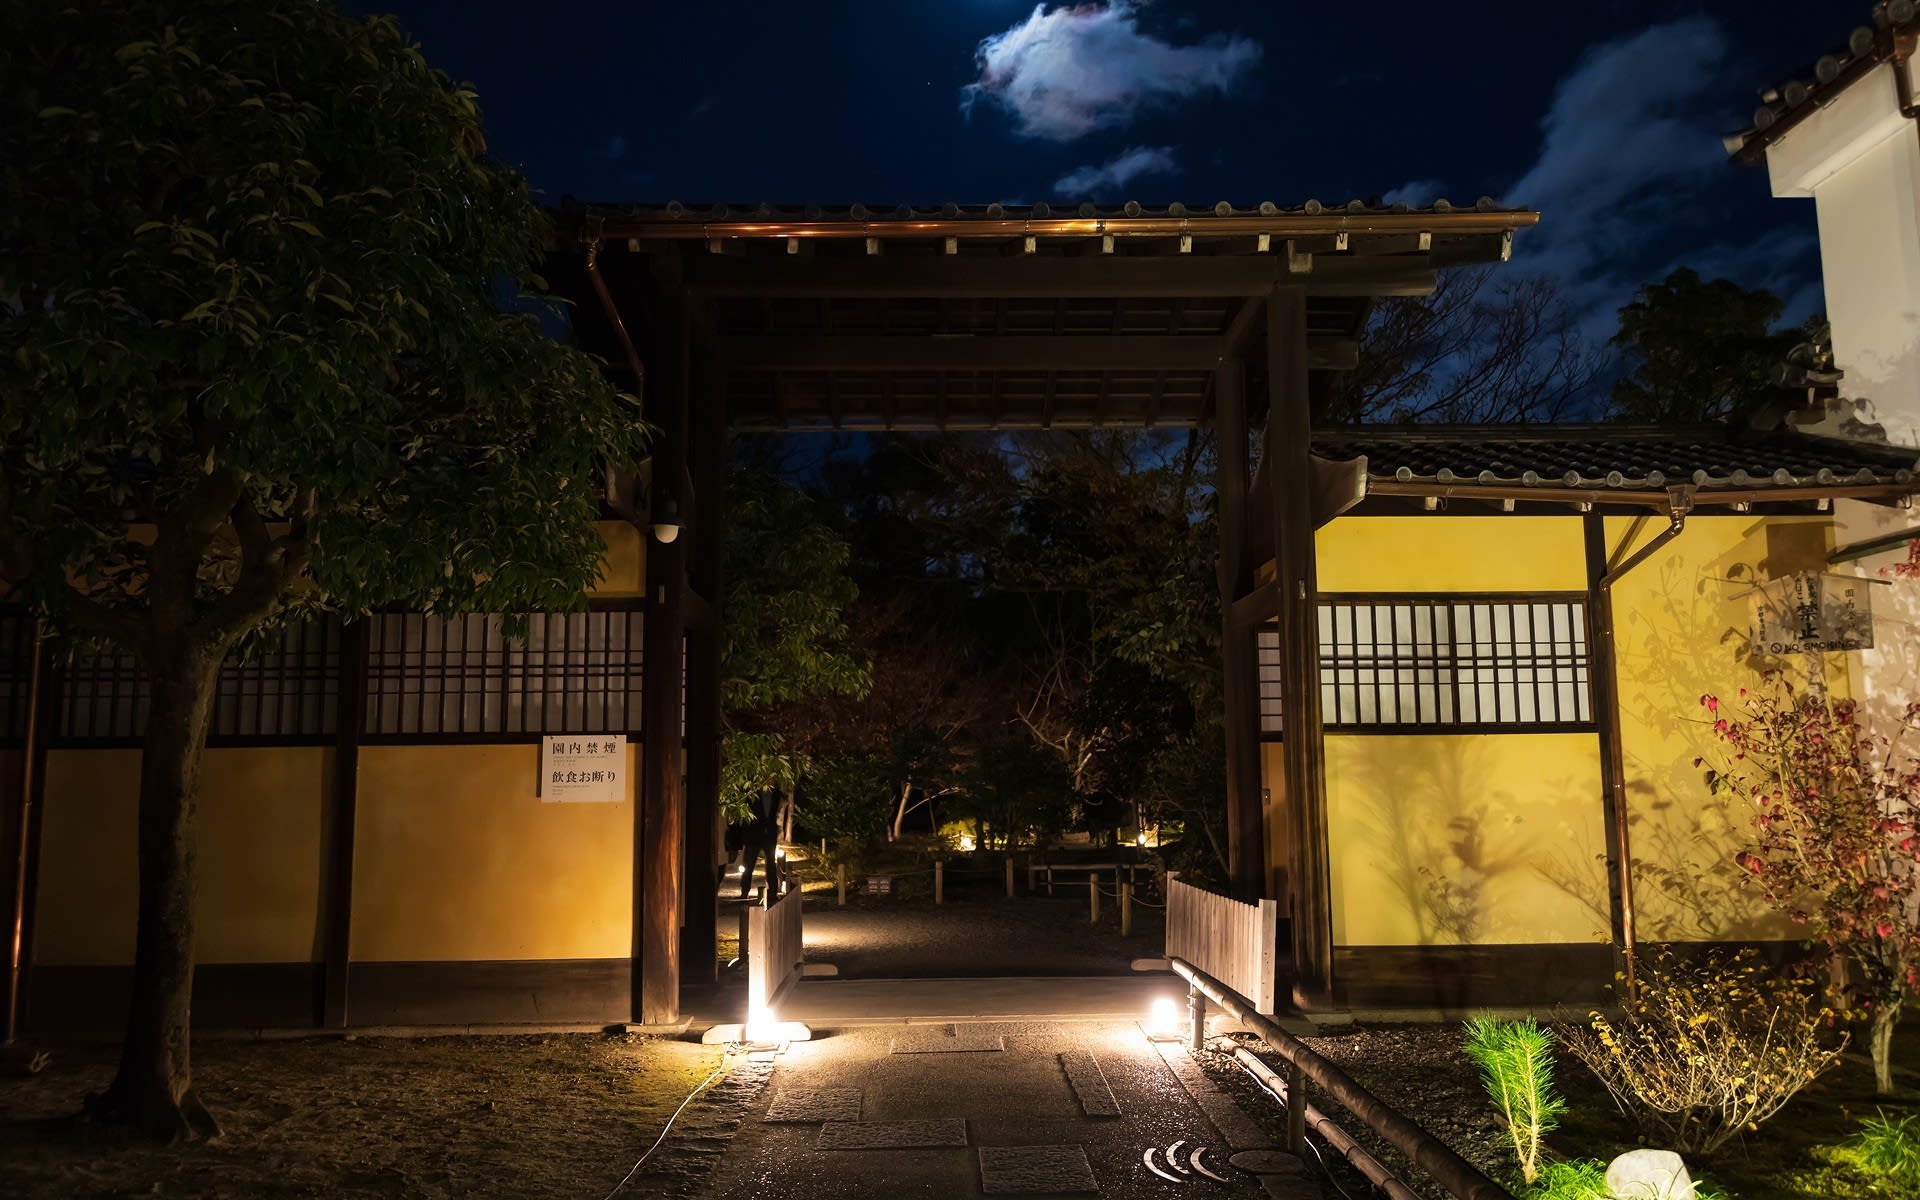 2018年紅葉の京都 渉成園ライトアップの壁紙 計18枚 壁紙 日々駄文